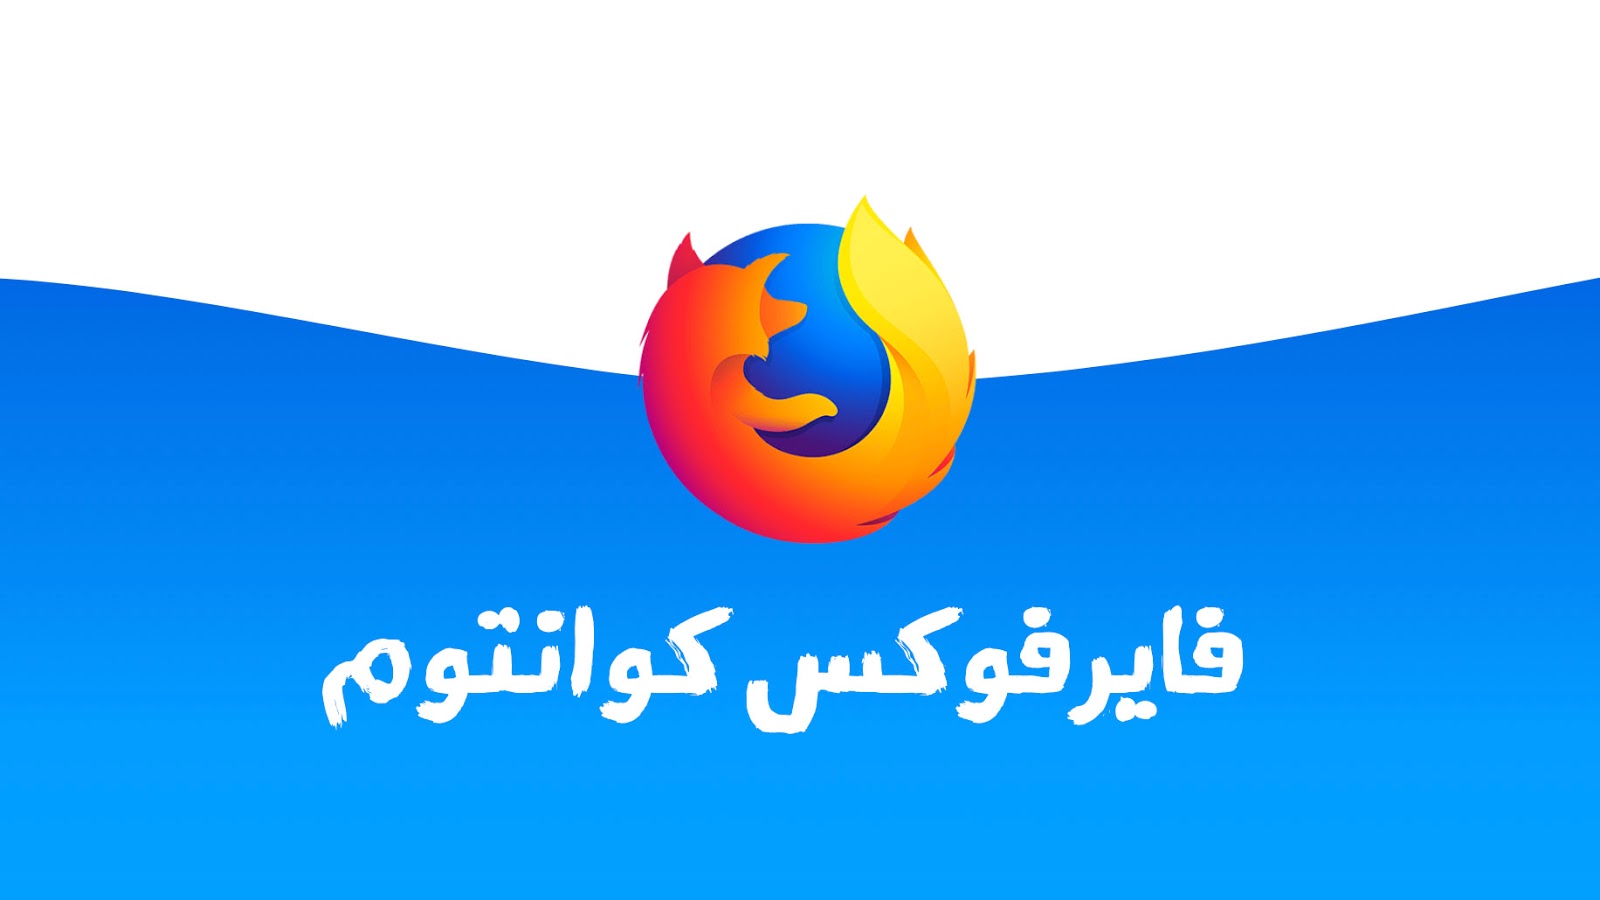  متصفح فايرفوكس كوانتوم الجديد 2018 Firefox Quantum